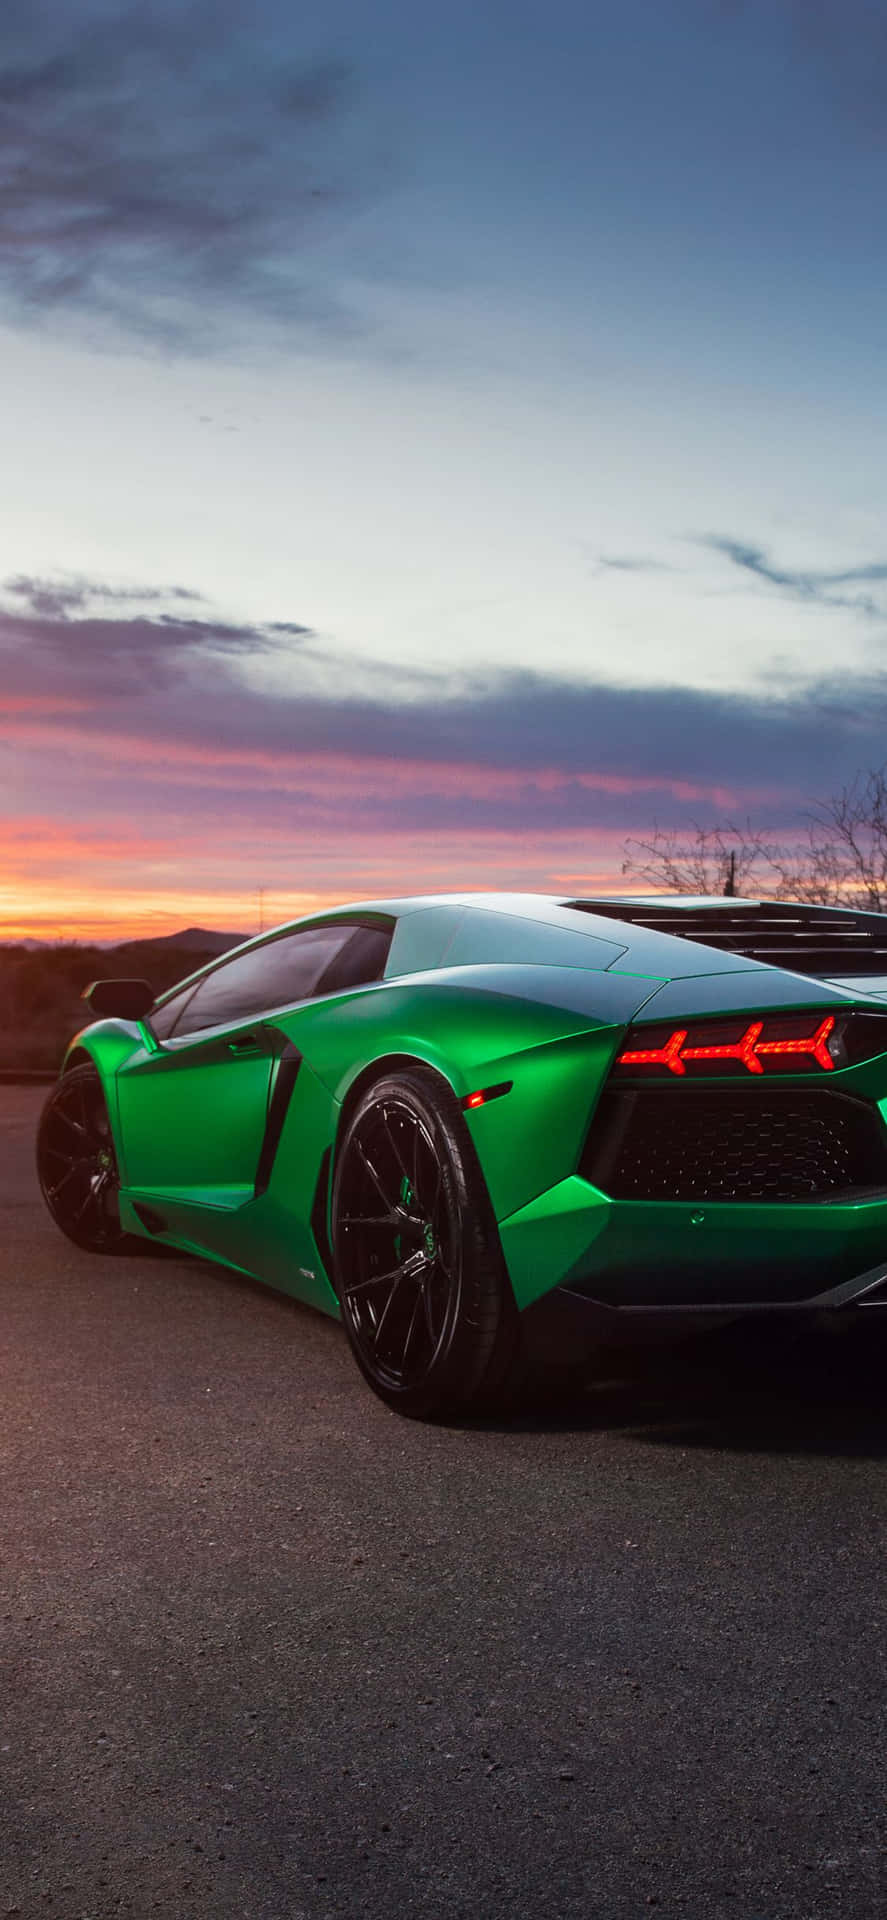 Strahlehell Wie Ein Grüner Lamborghini Wallpaper